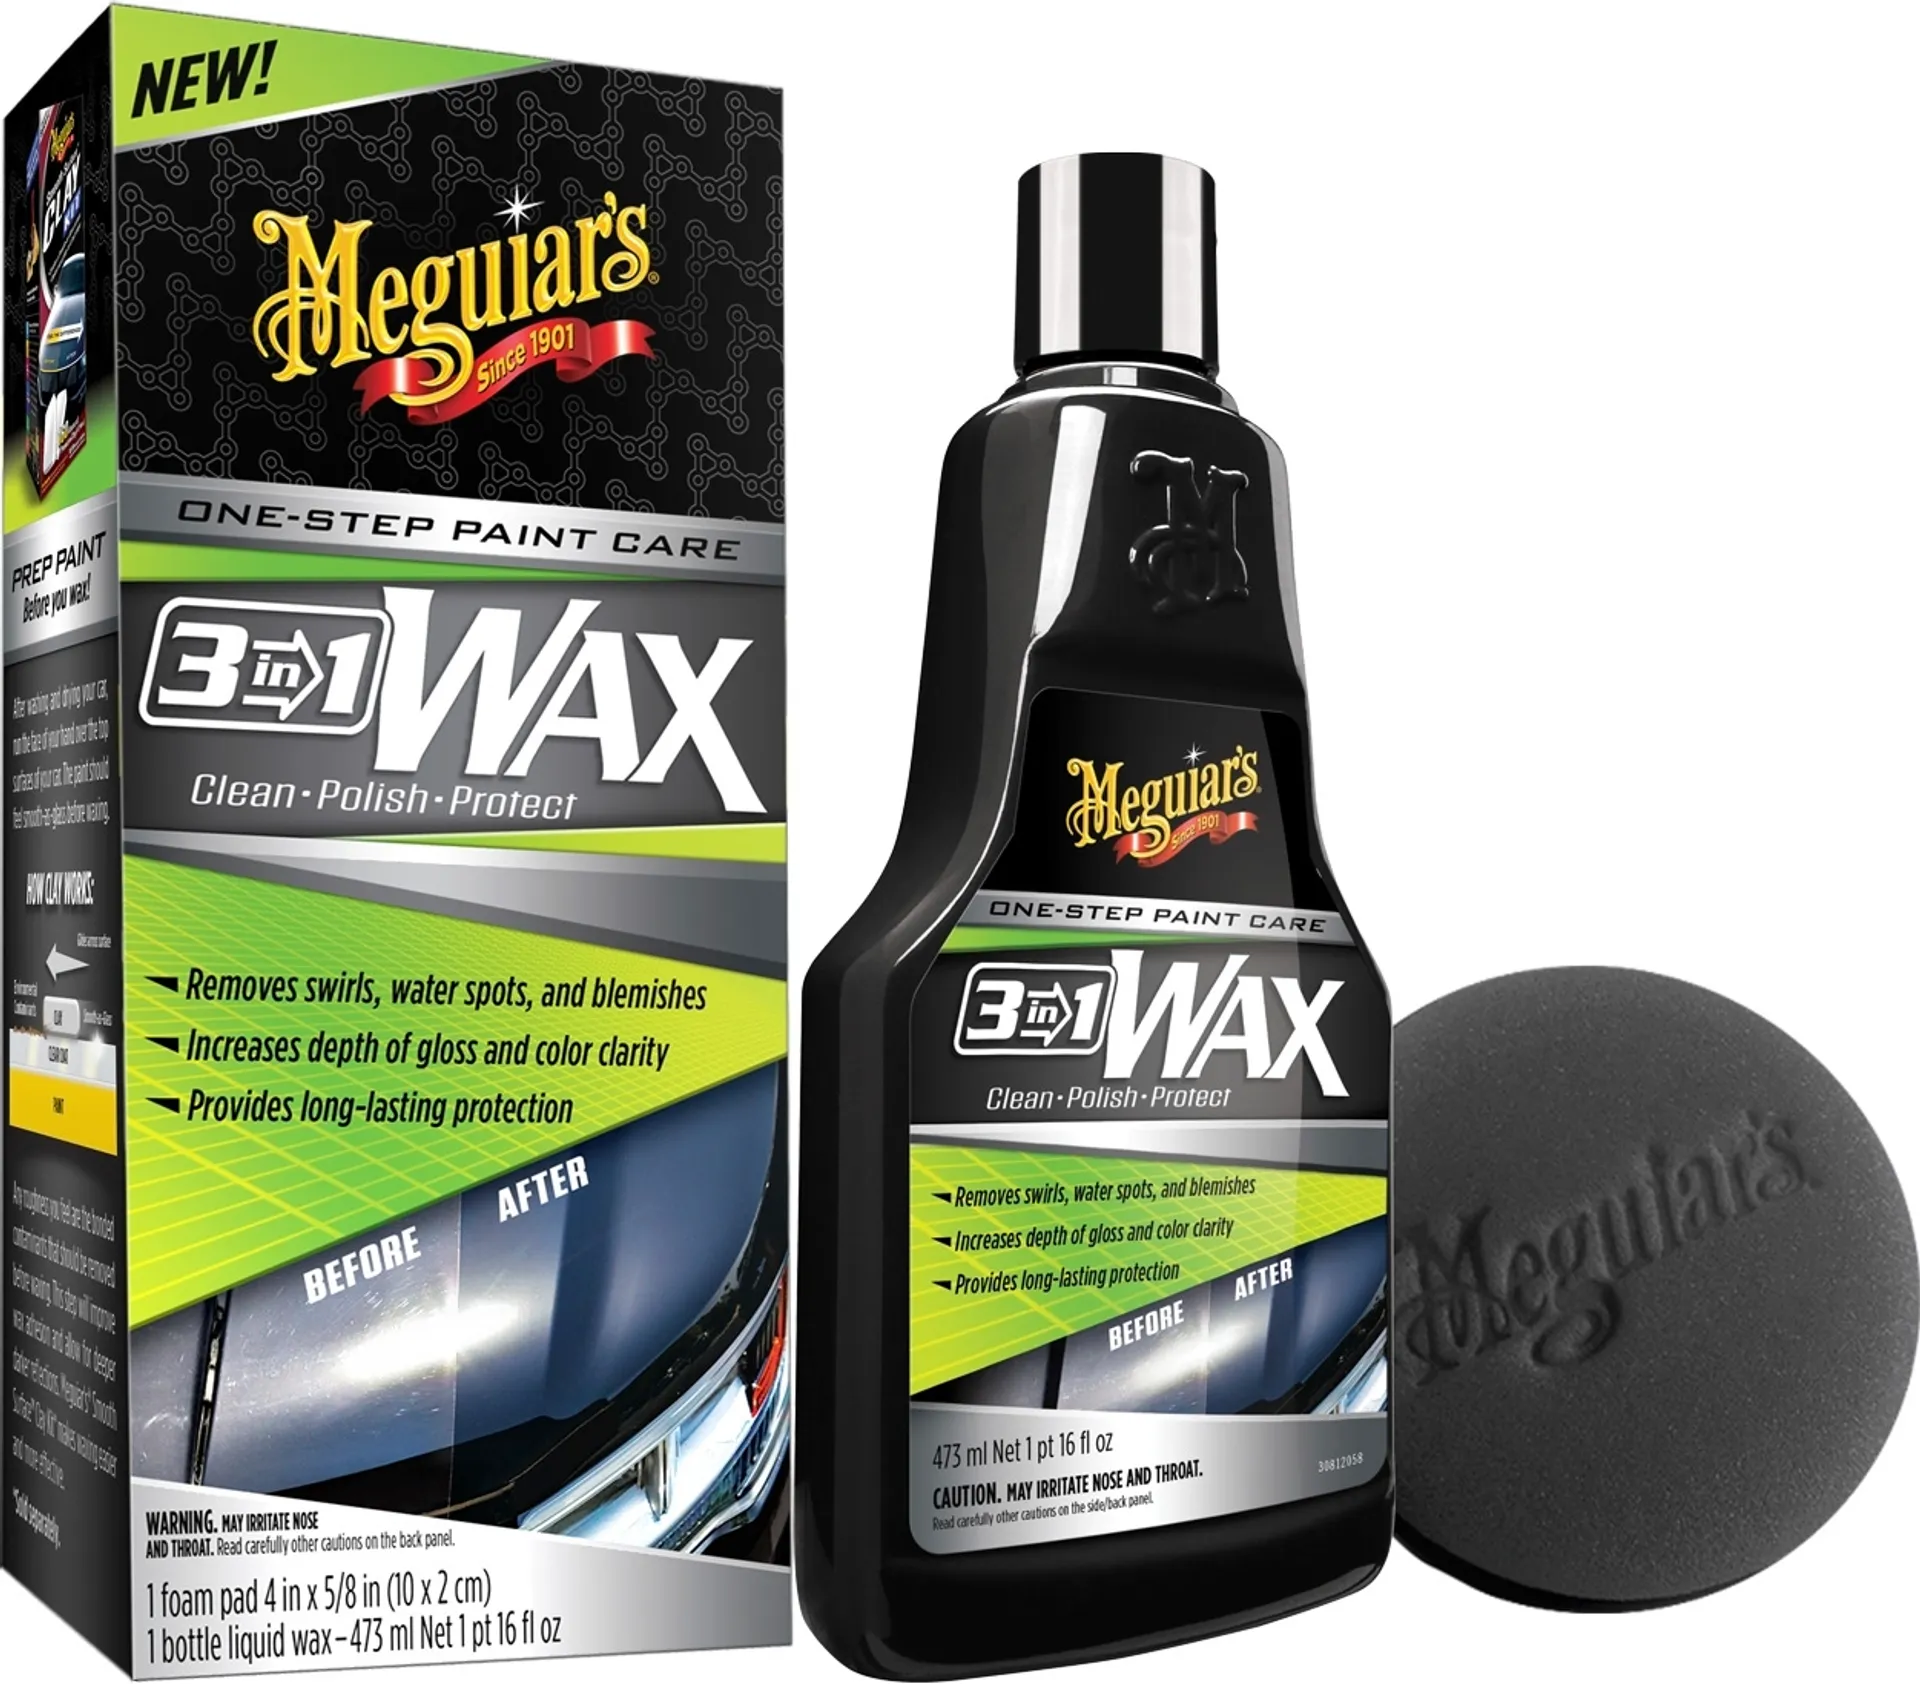 Meguiars 3-in-1 Wax puhdistaa, killottaa ja suojaa, kaikki yhdellä työvaiheella - 1